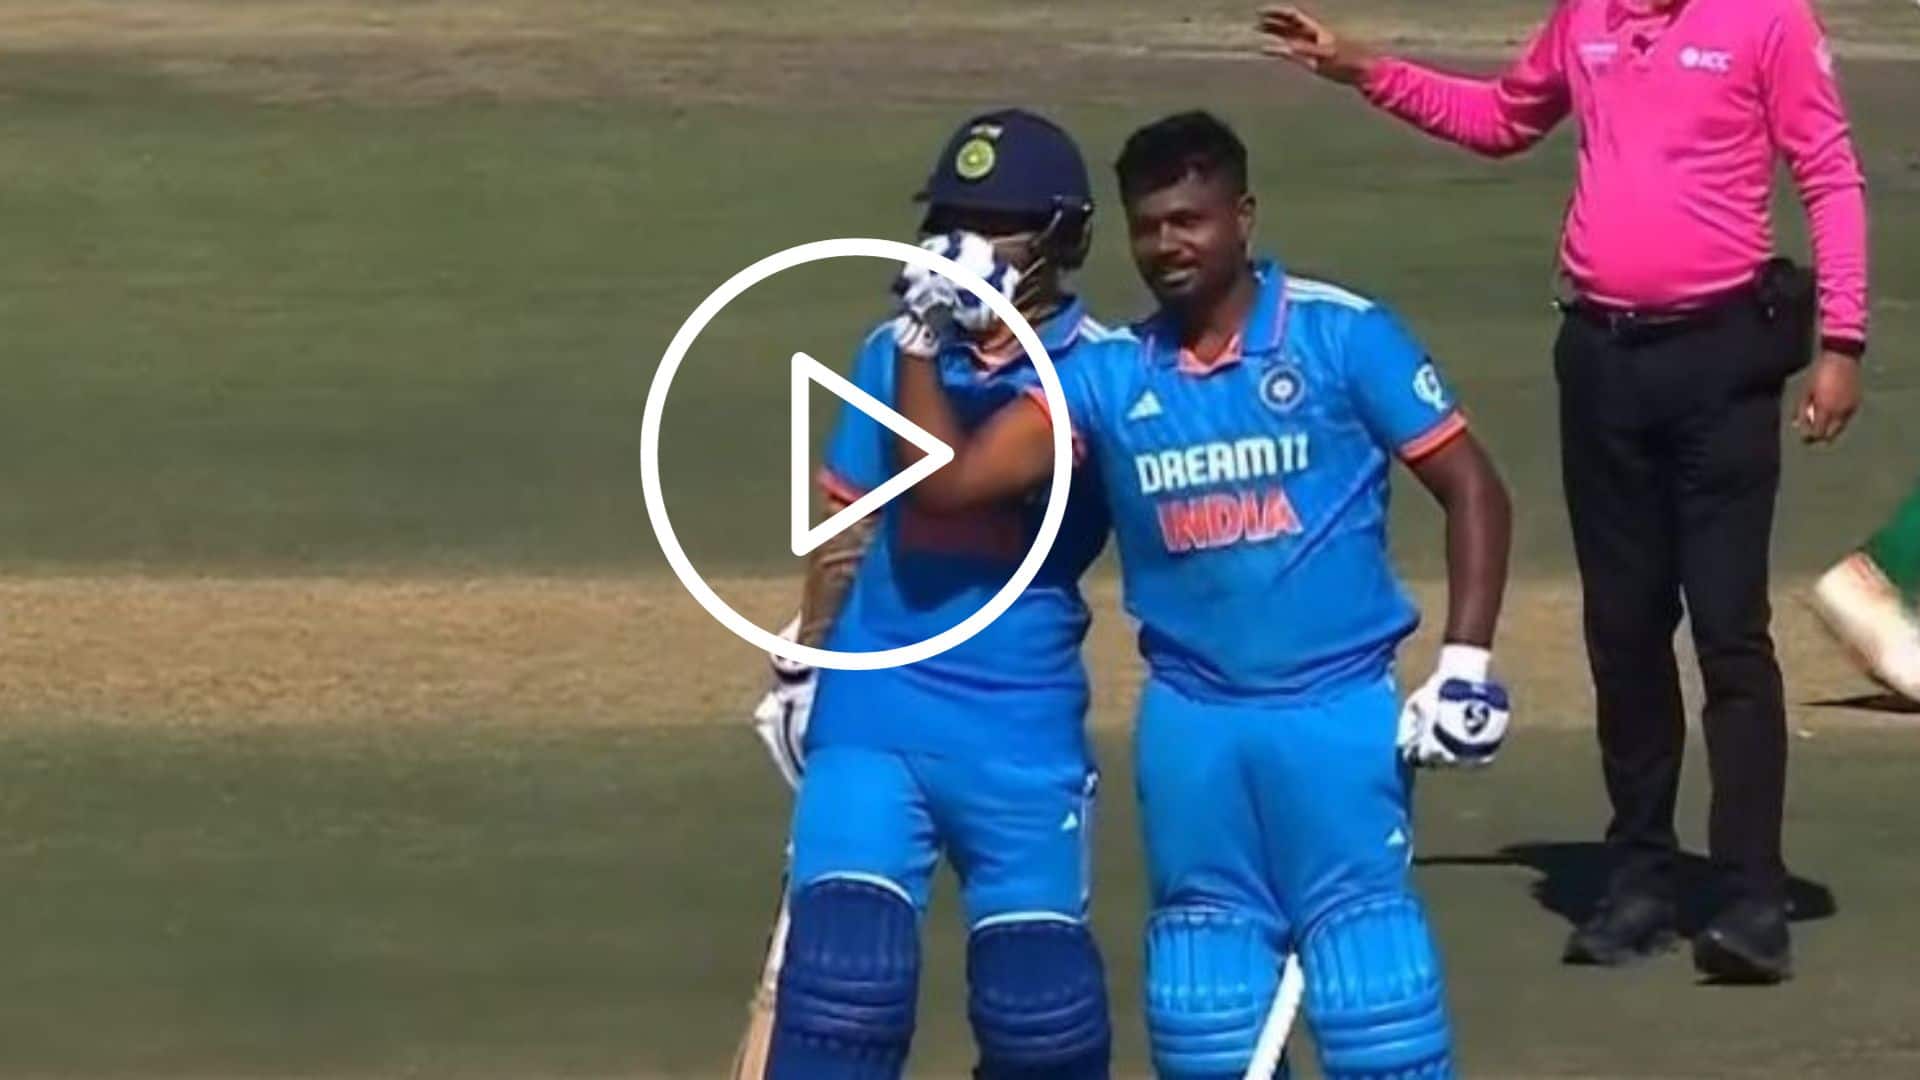 [Watch] Sanju Samson's 'Biceps Pumping' Celebration After Smashing His First ODI Century